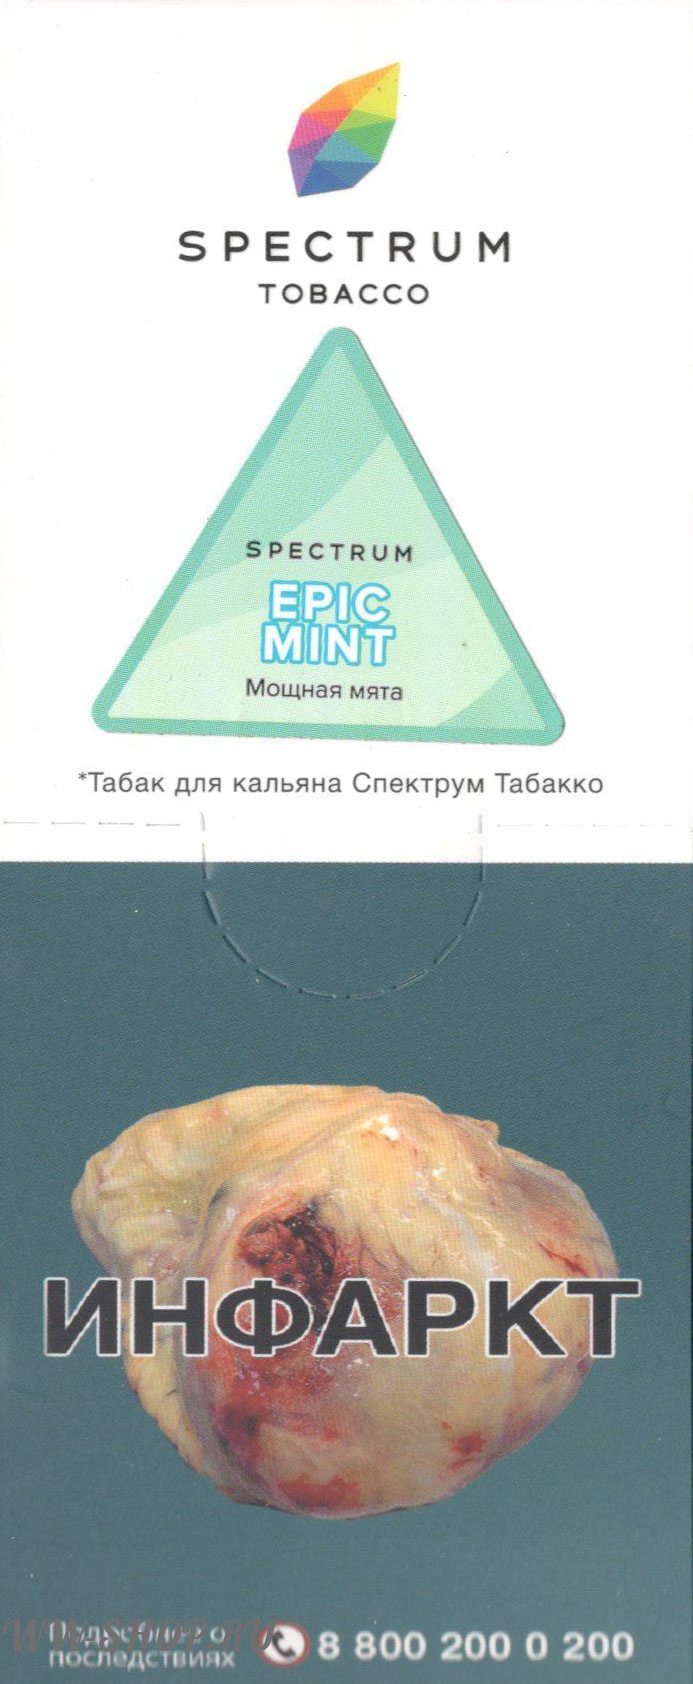 spectrum- мощная мята (epic mint) Тамбов